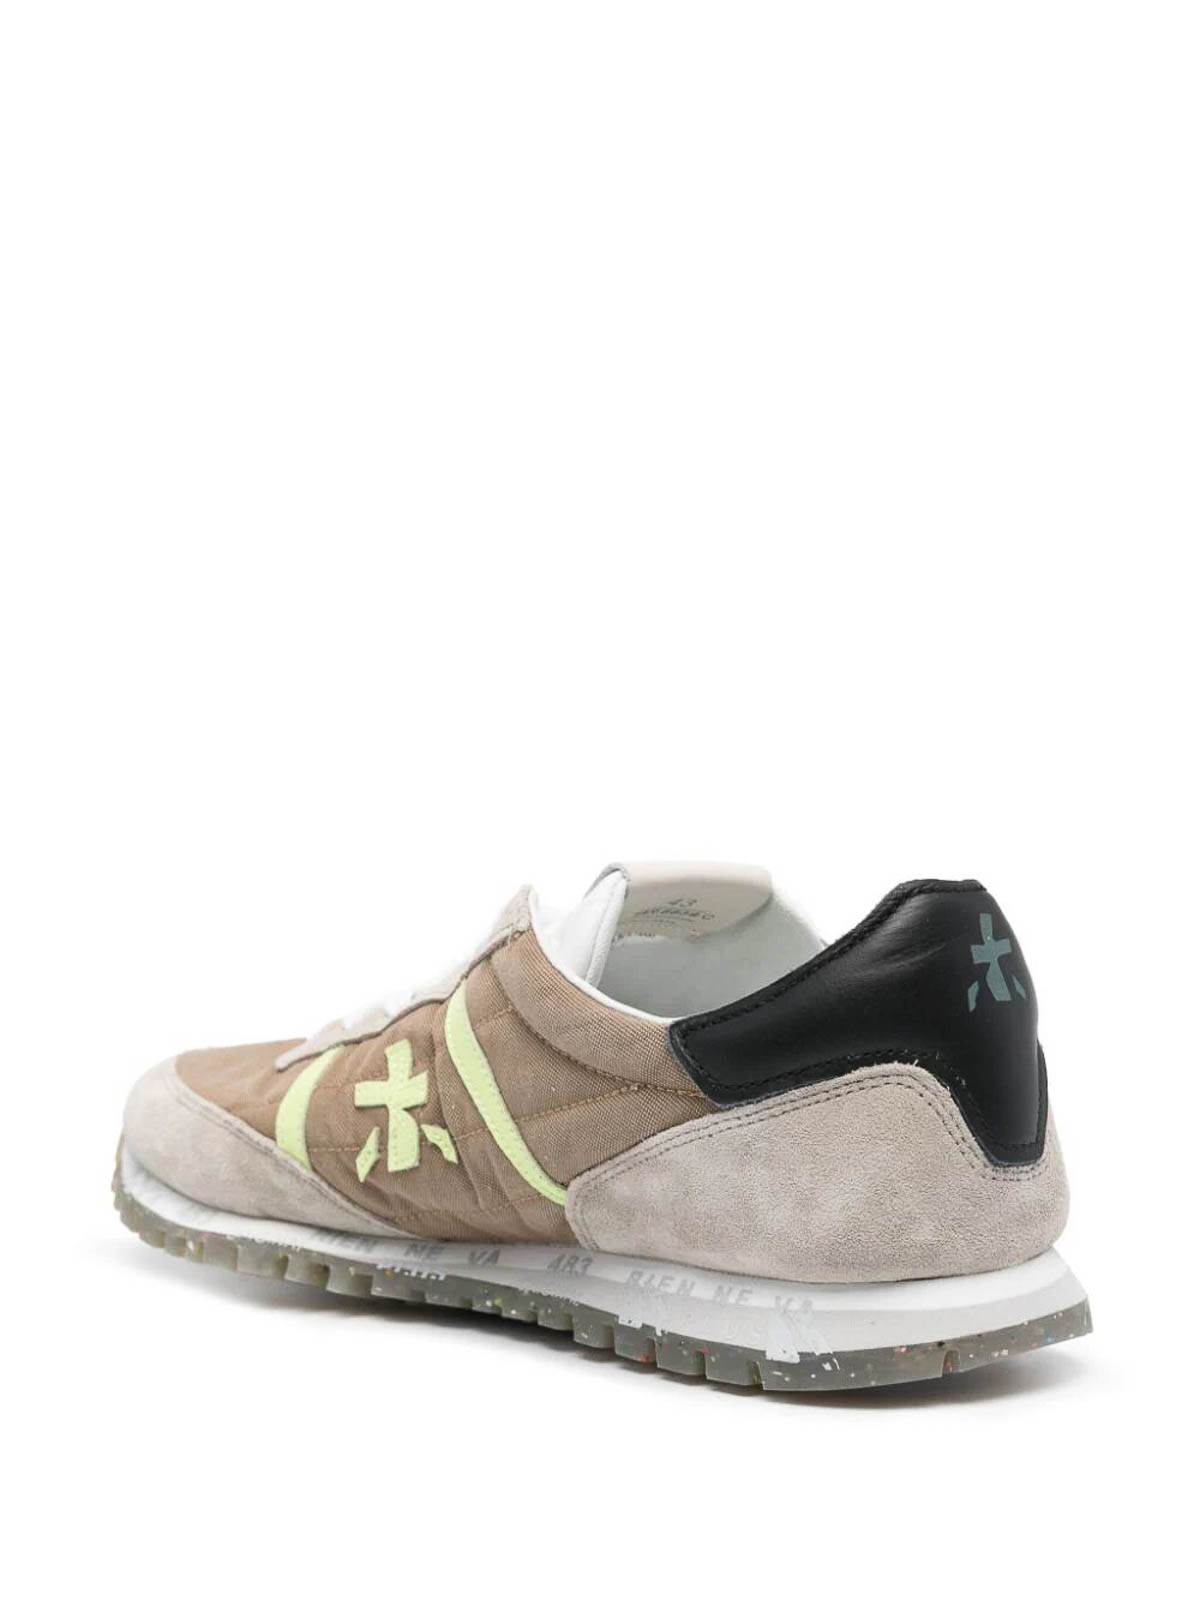 Shop Premiata Sean Bi Material Sneakers In Brown